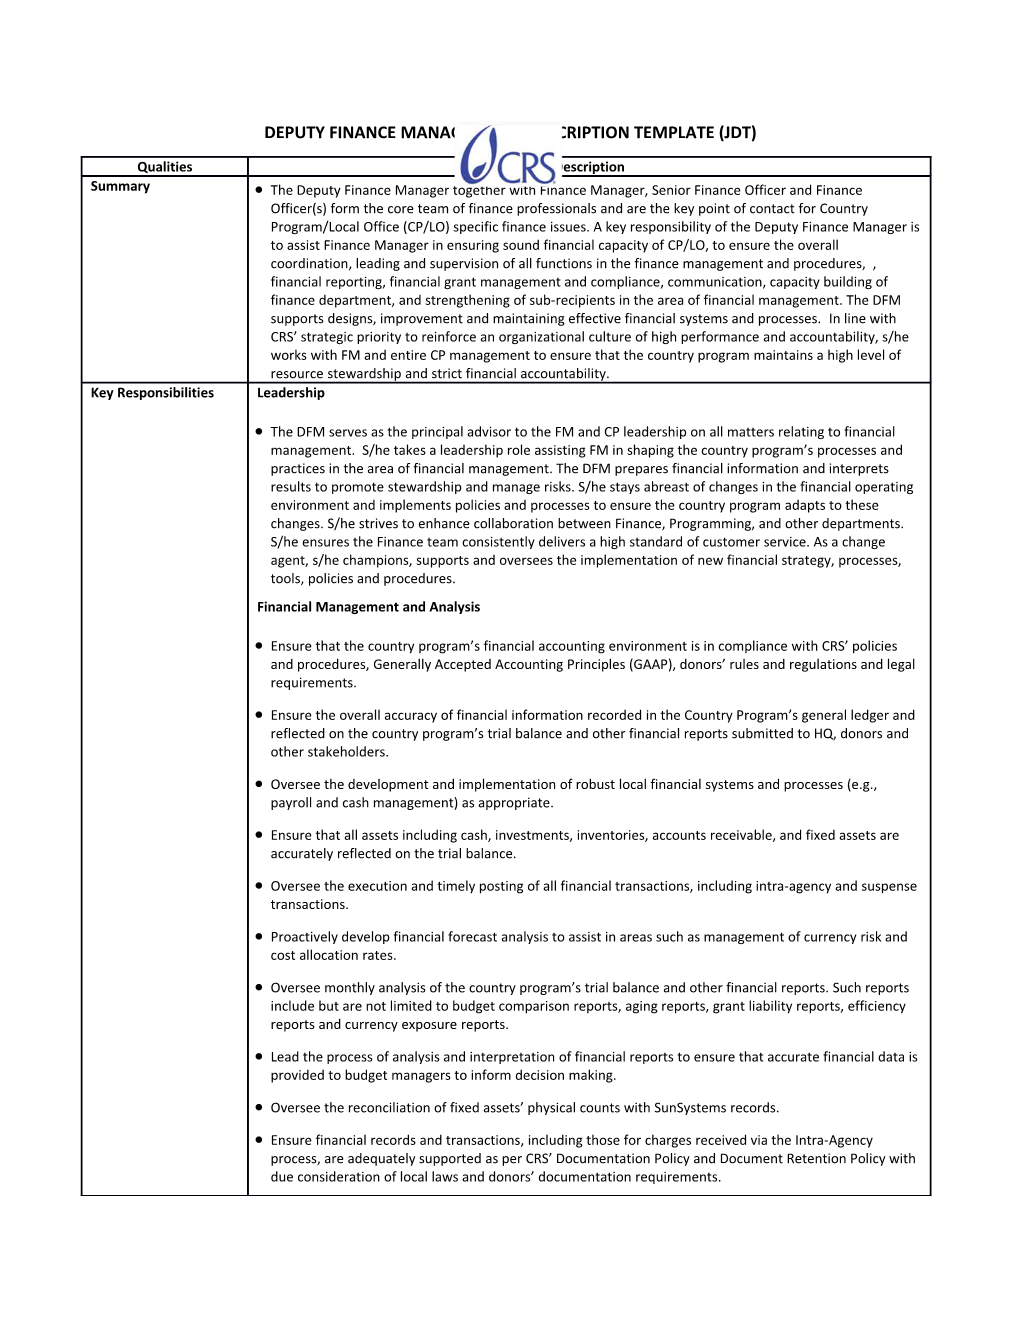 Deputyfinancemanager Job Description Template (Jdt)